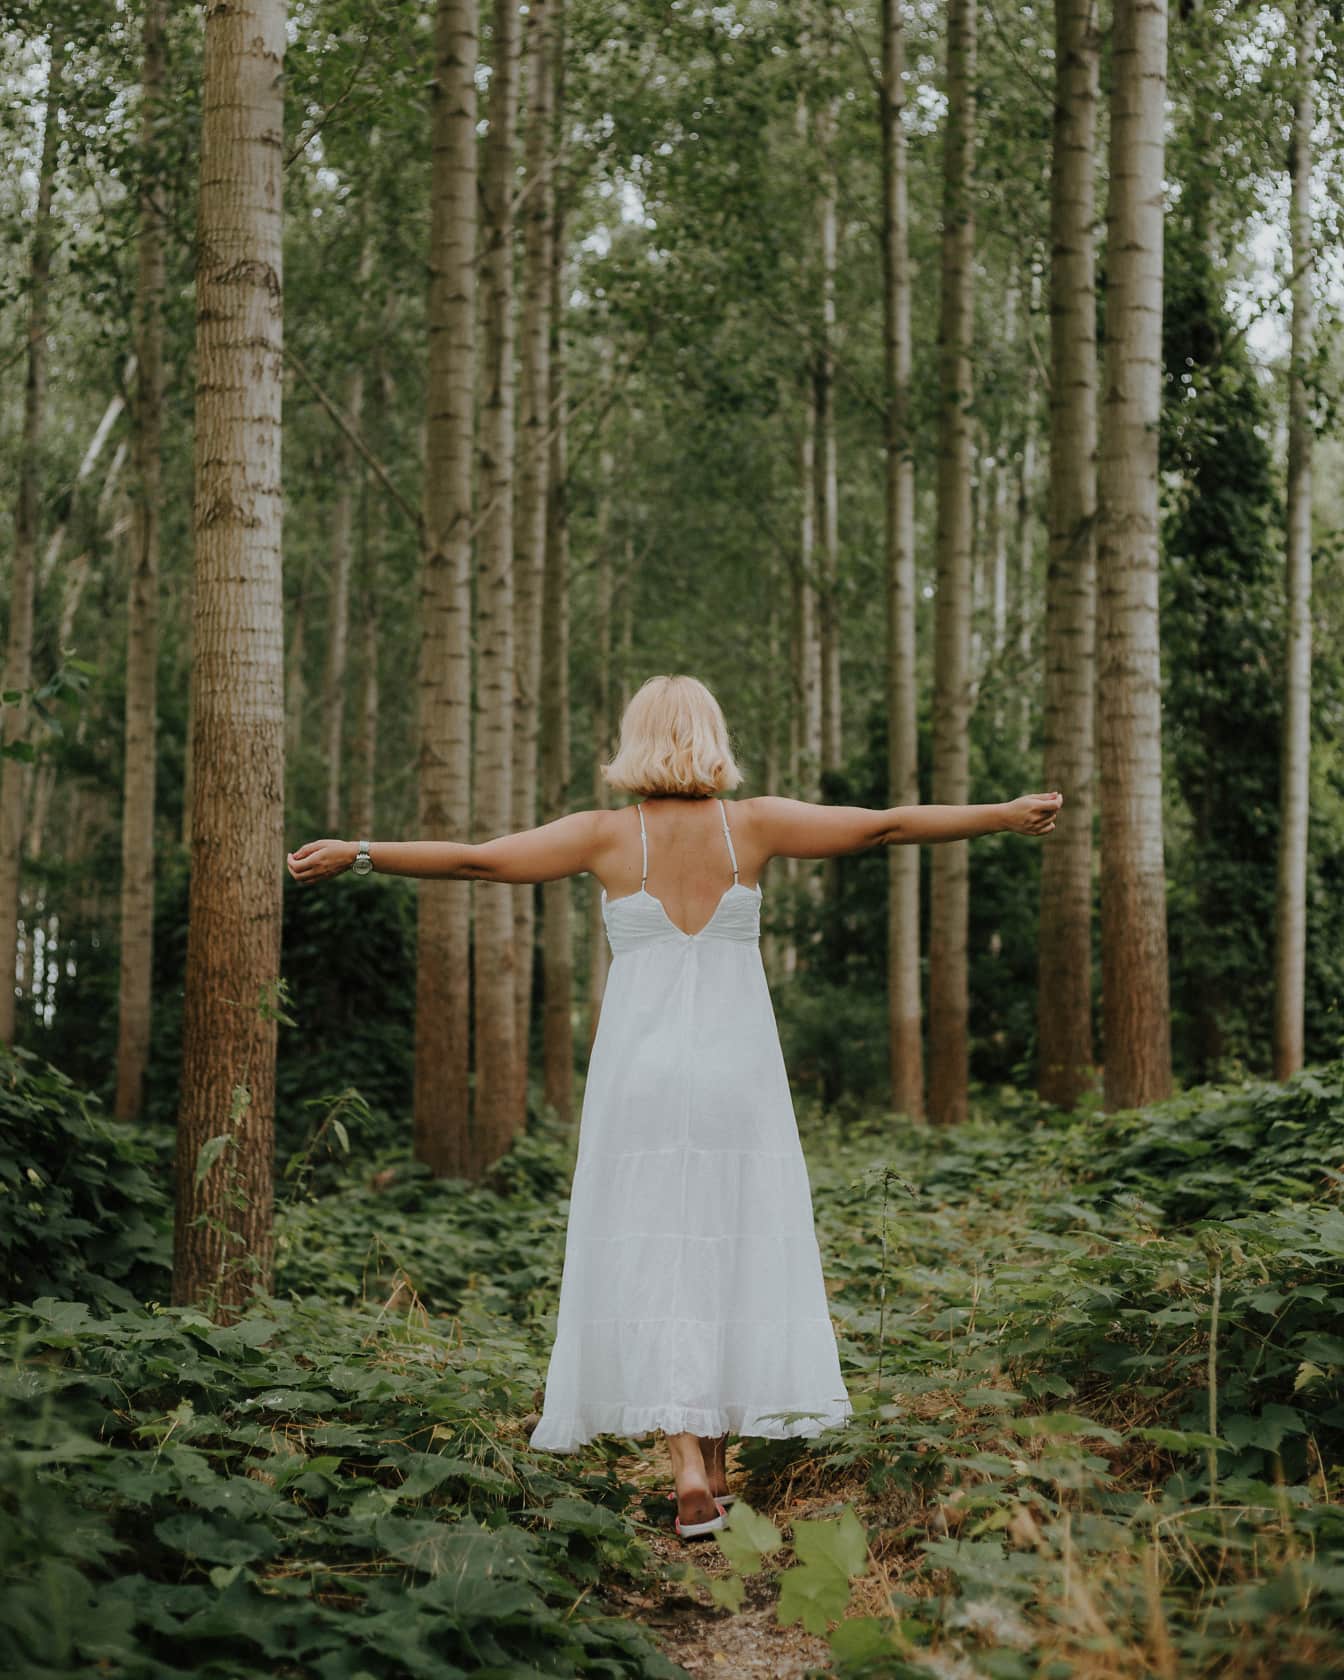 Blondine stående i skoven iført ren hvid kjole